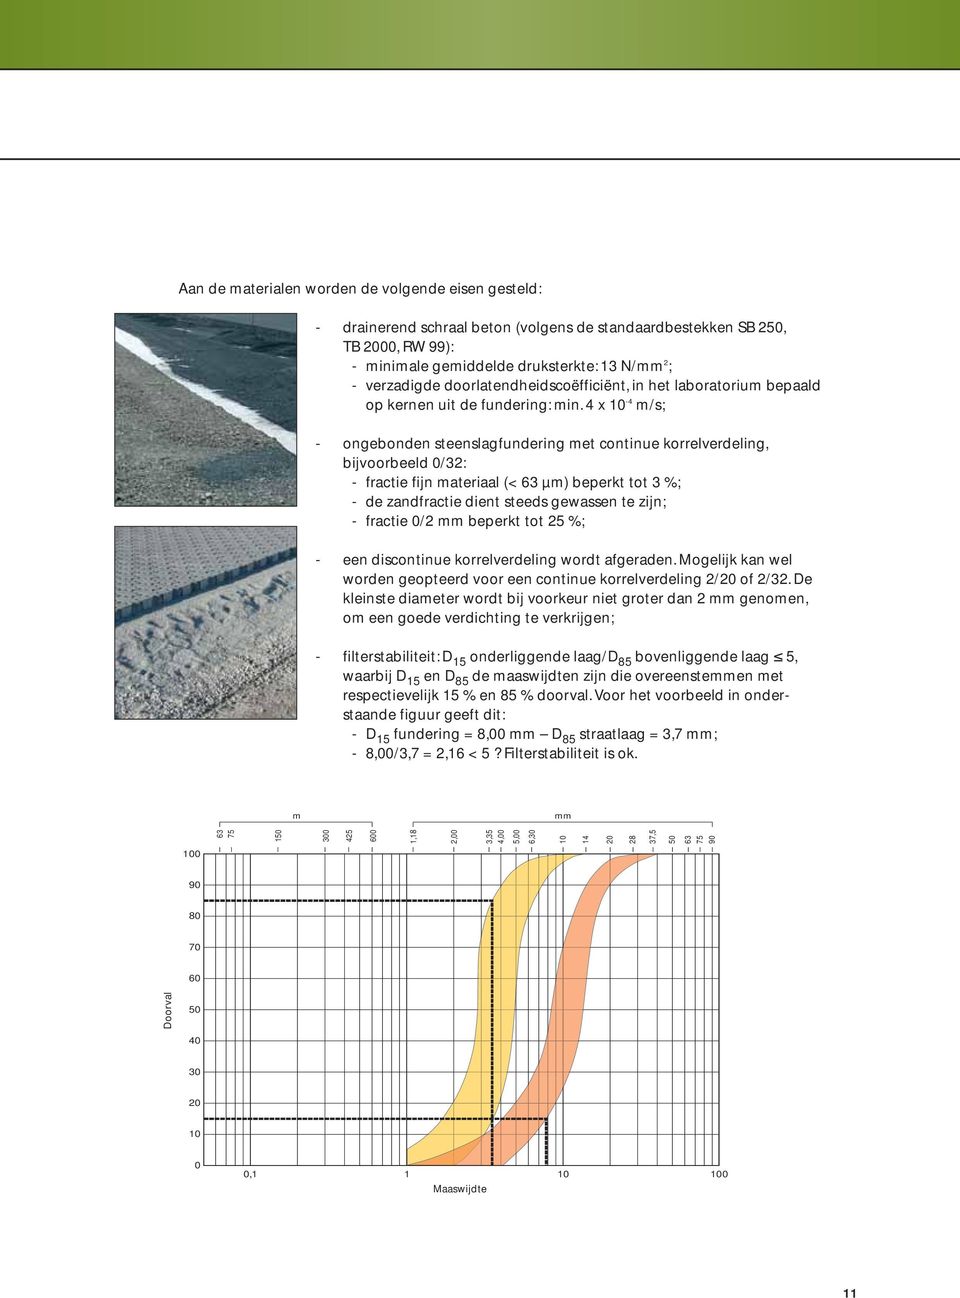 4 x 10-4 m/s; - ongebonden steenslagfundering met continue korrelverdeling, bijvoorbeeld 0/32: - fractie fijn materiaal (< 63 µm) beperkt tot 3 %; - de zandfractie dient steeds gewassen te zijn; -